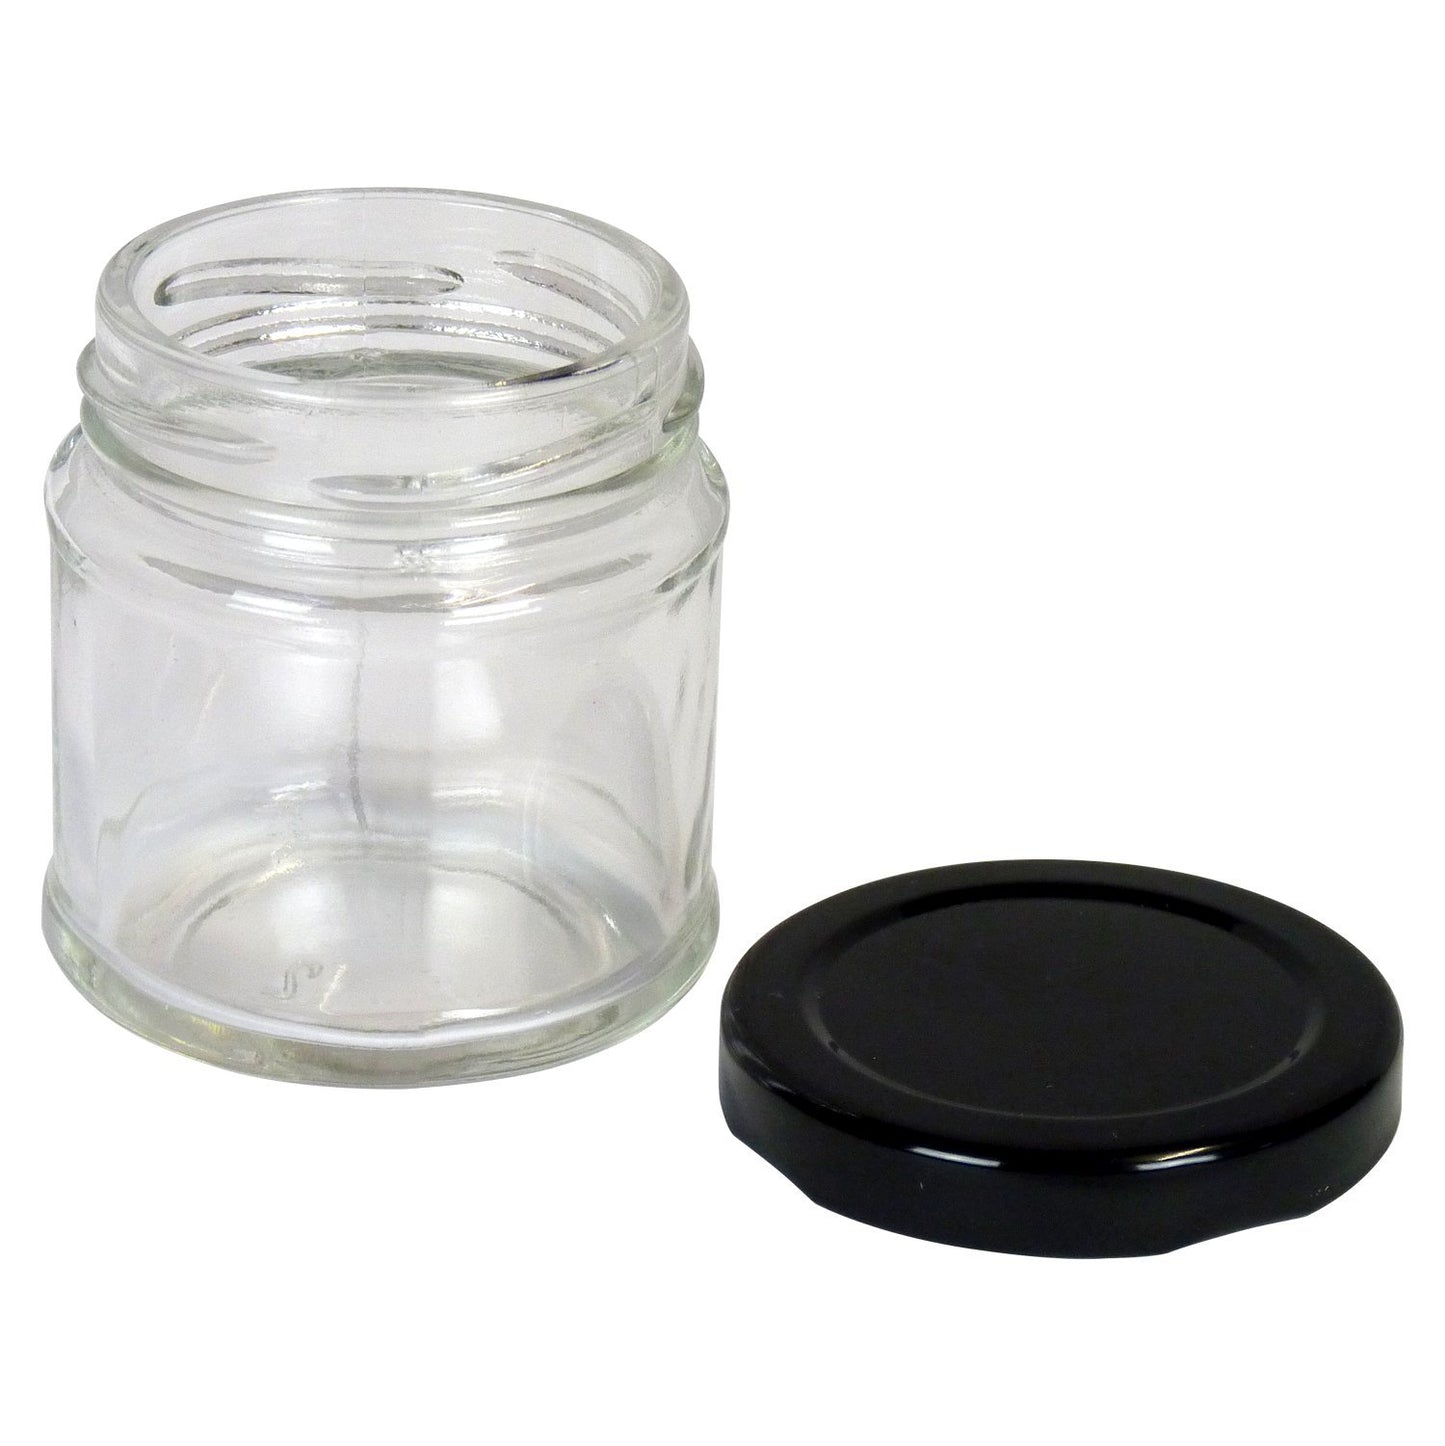 Round Jar, 8oz, 72 pack